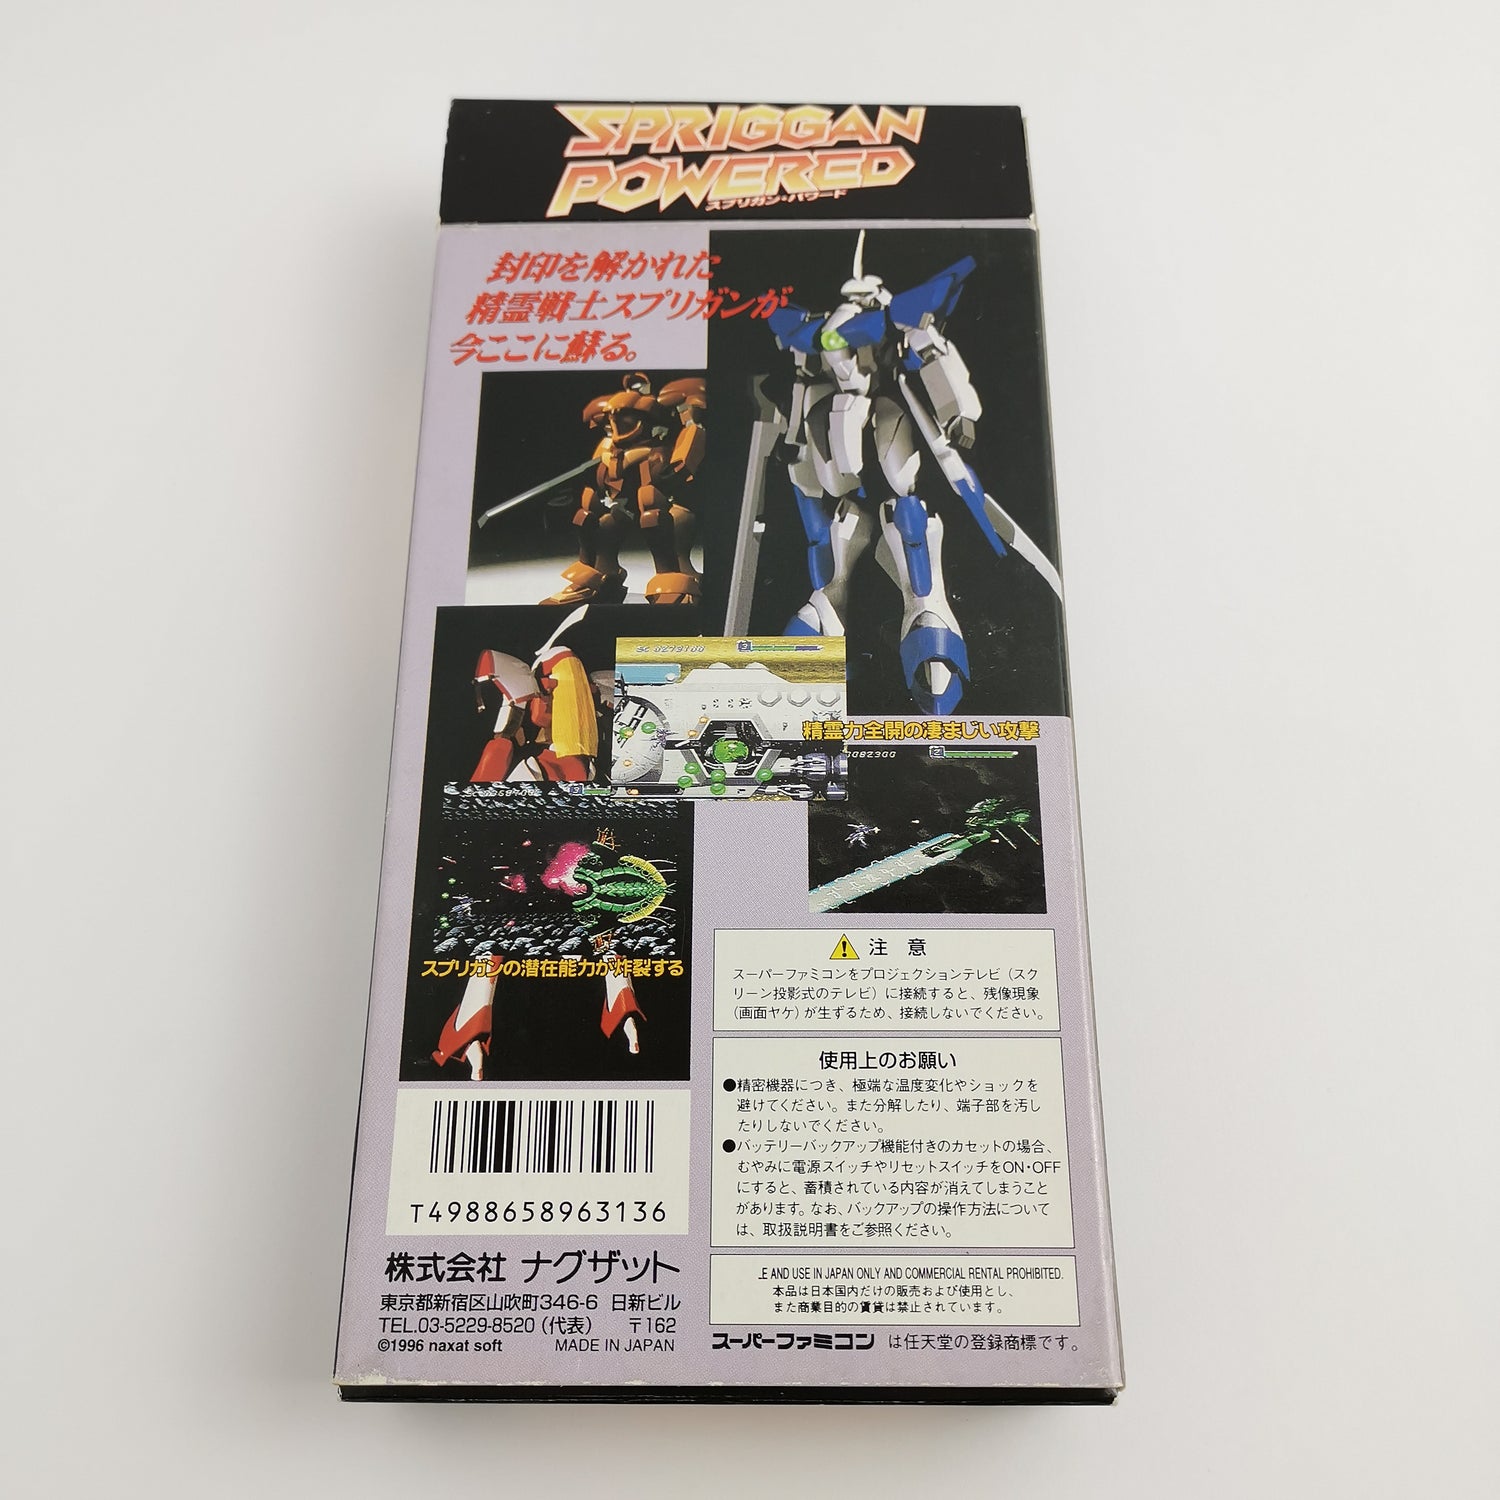 Nintendo Super Famicom Game 